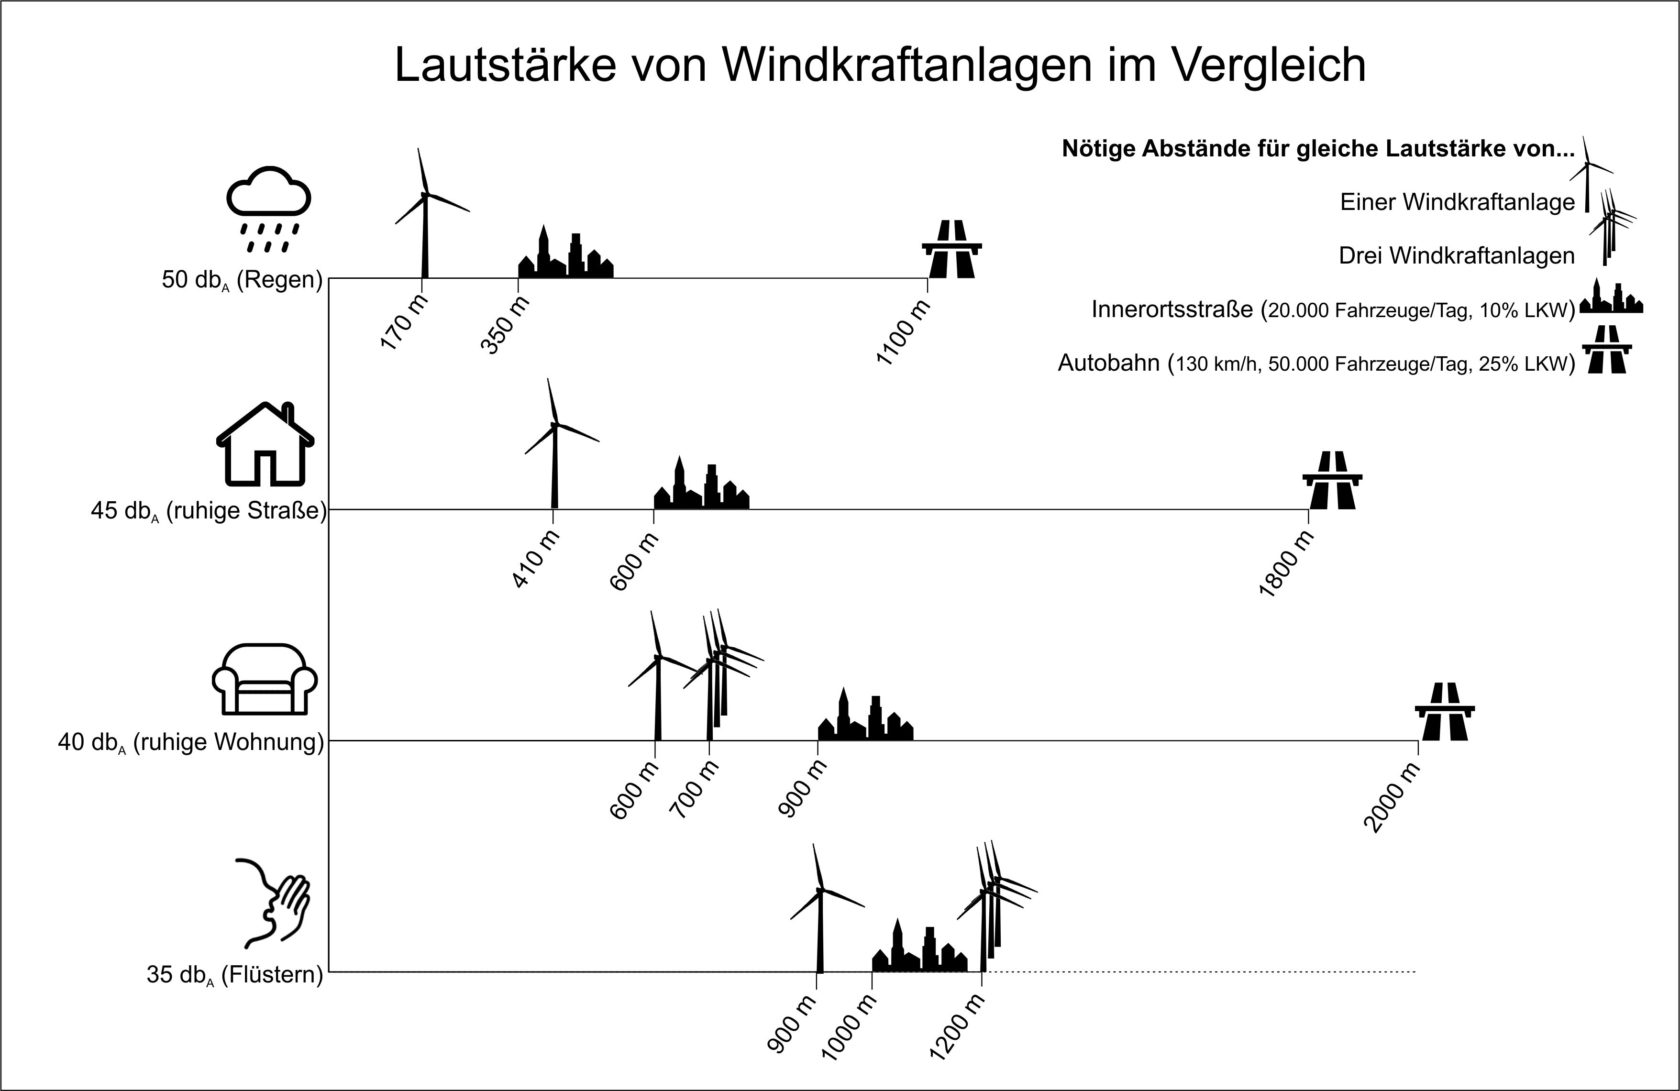 Das Bild vergleicht den notwendigen Abstand von Windrädern und Straßen für unterschiedliche Lautstärken